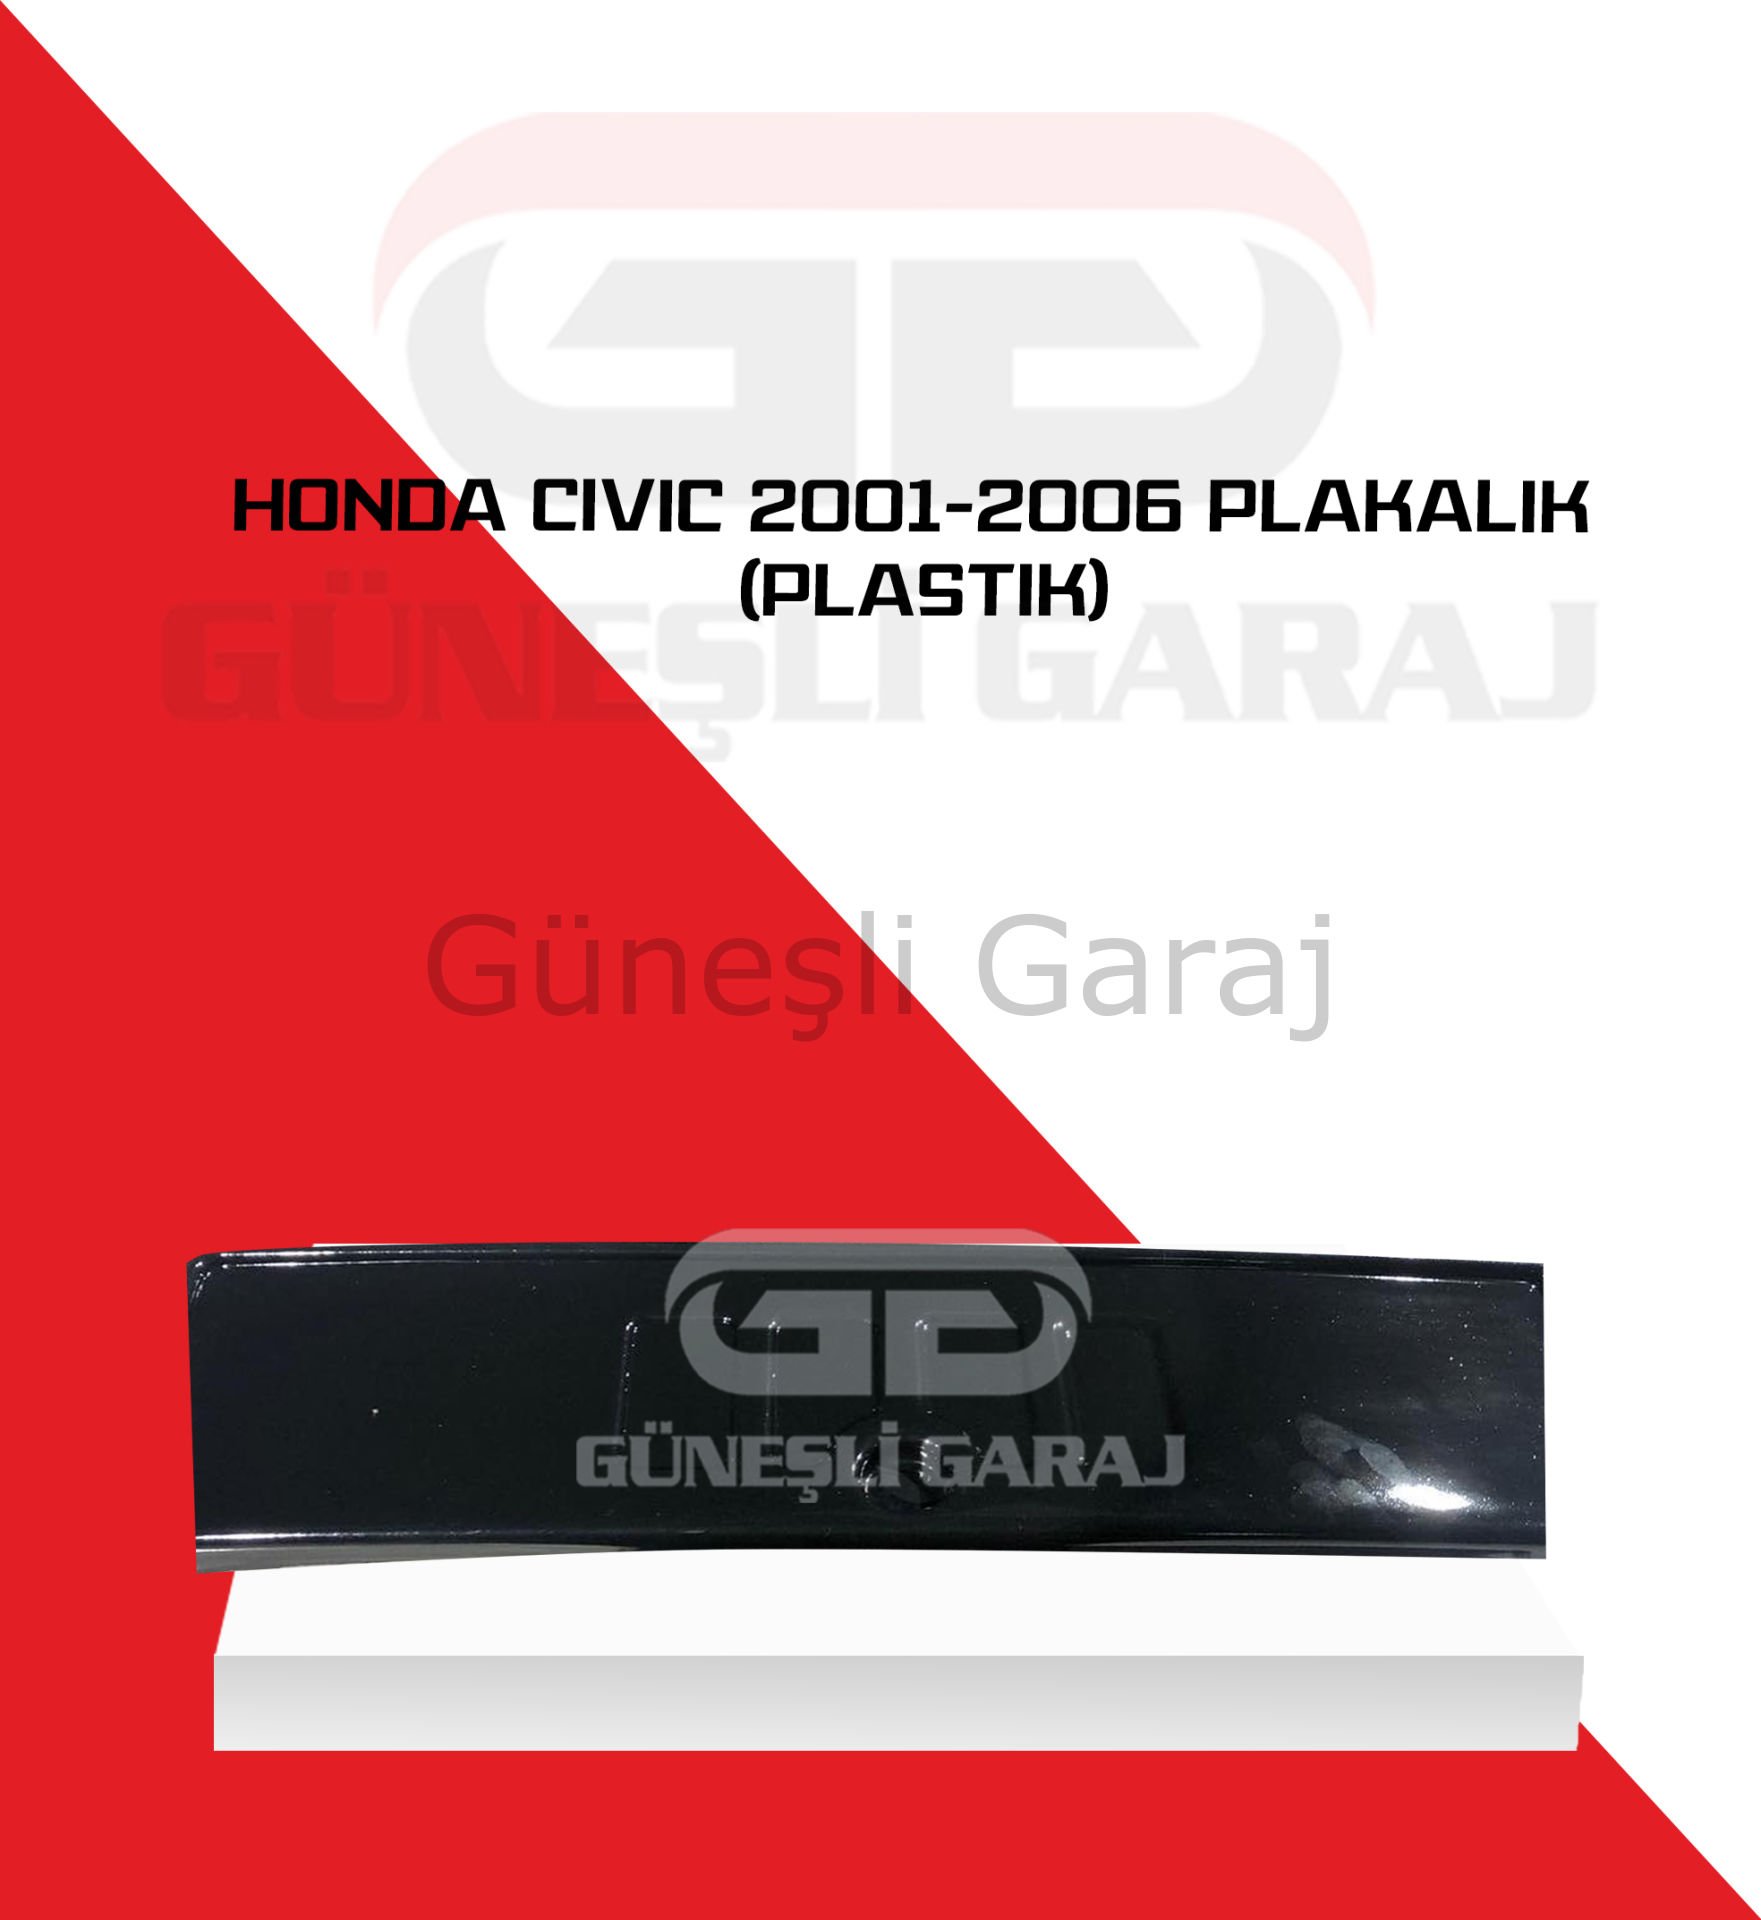 Honda Civic 2001-2006 Plakalık (Plastik)